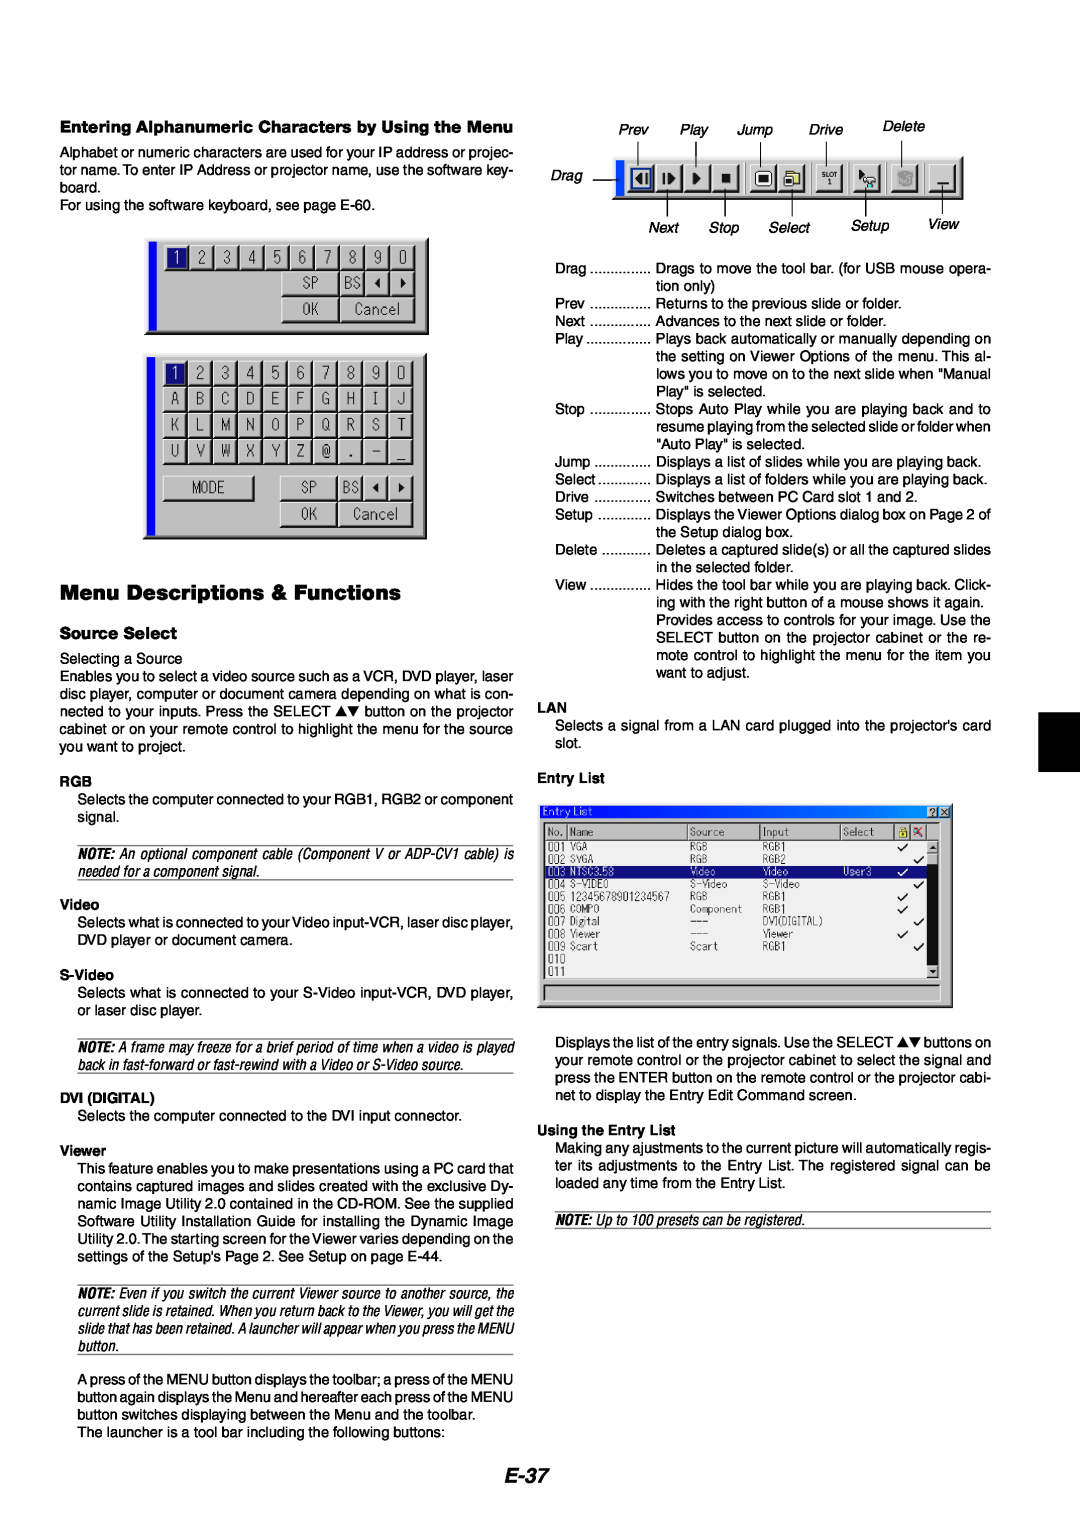 NEC MT1060 user manual Menu Descriptions & Functions, E-37, Source Select 